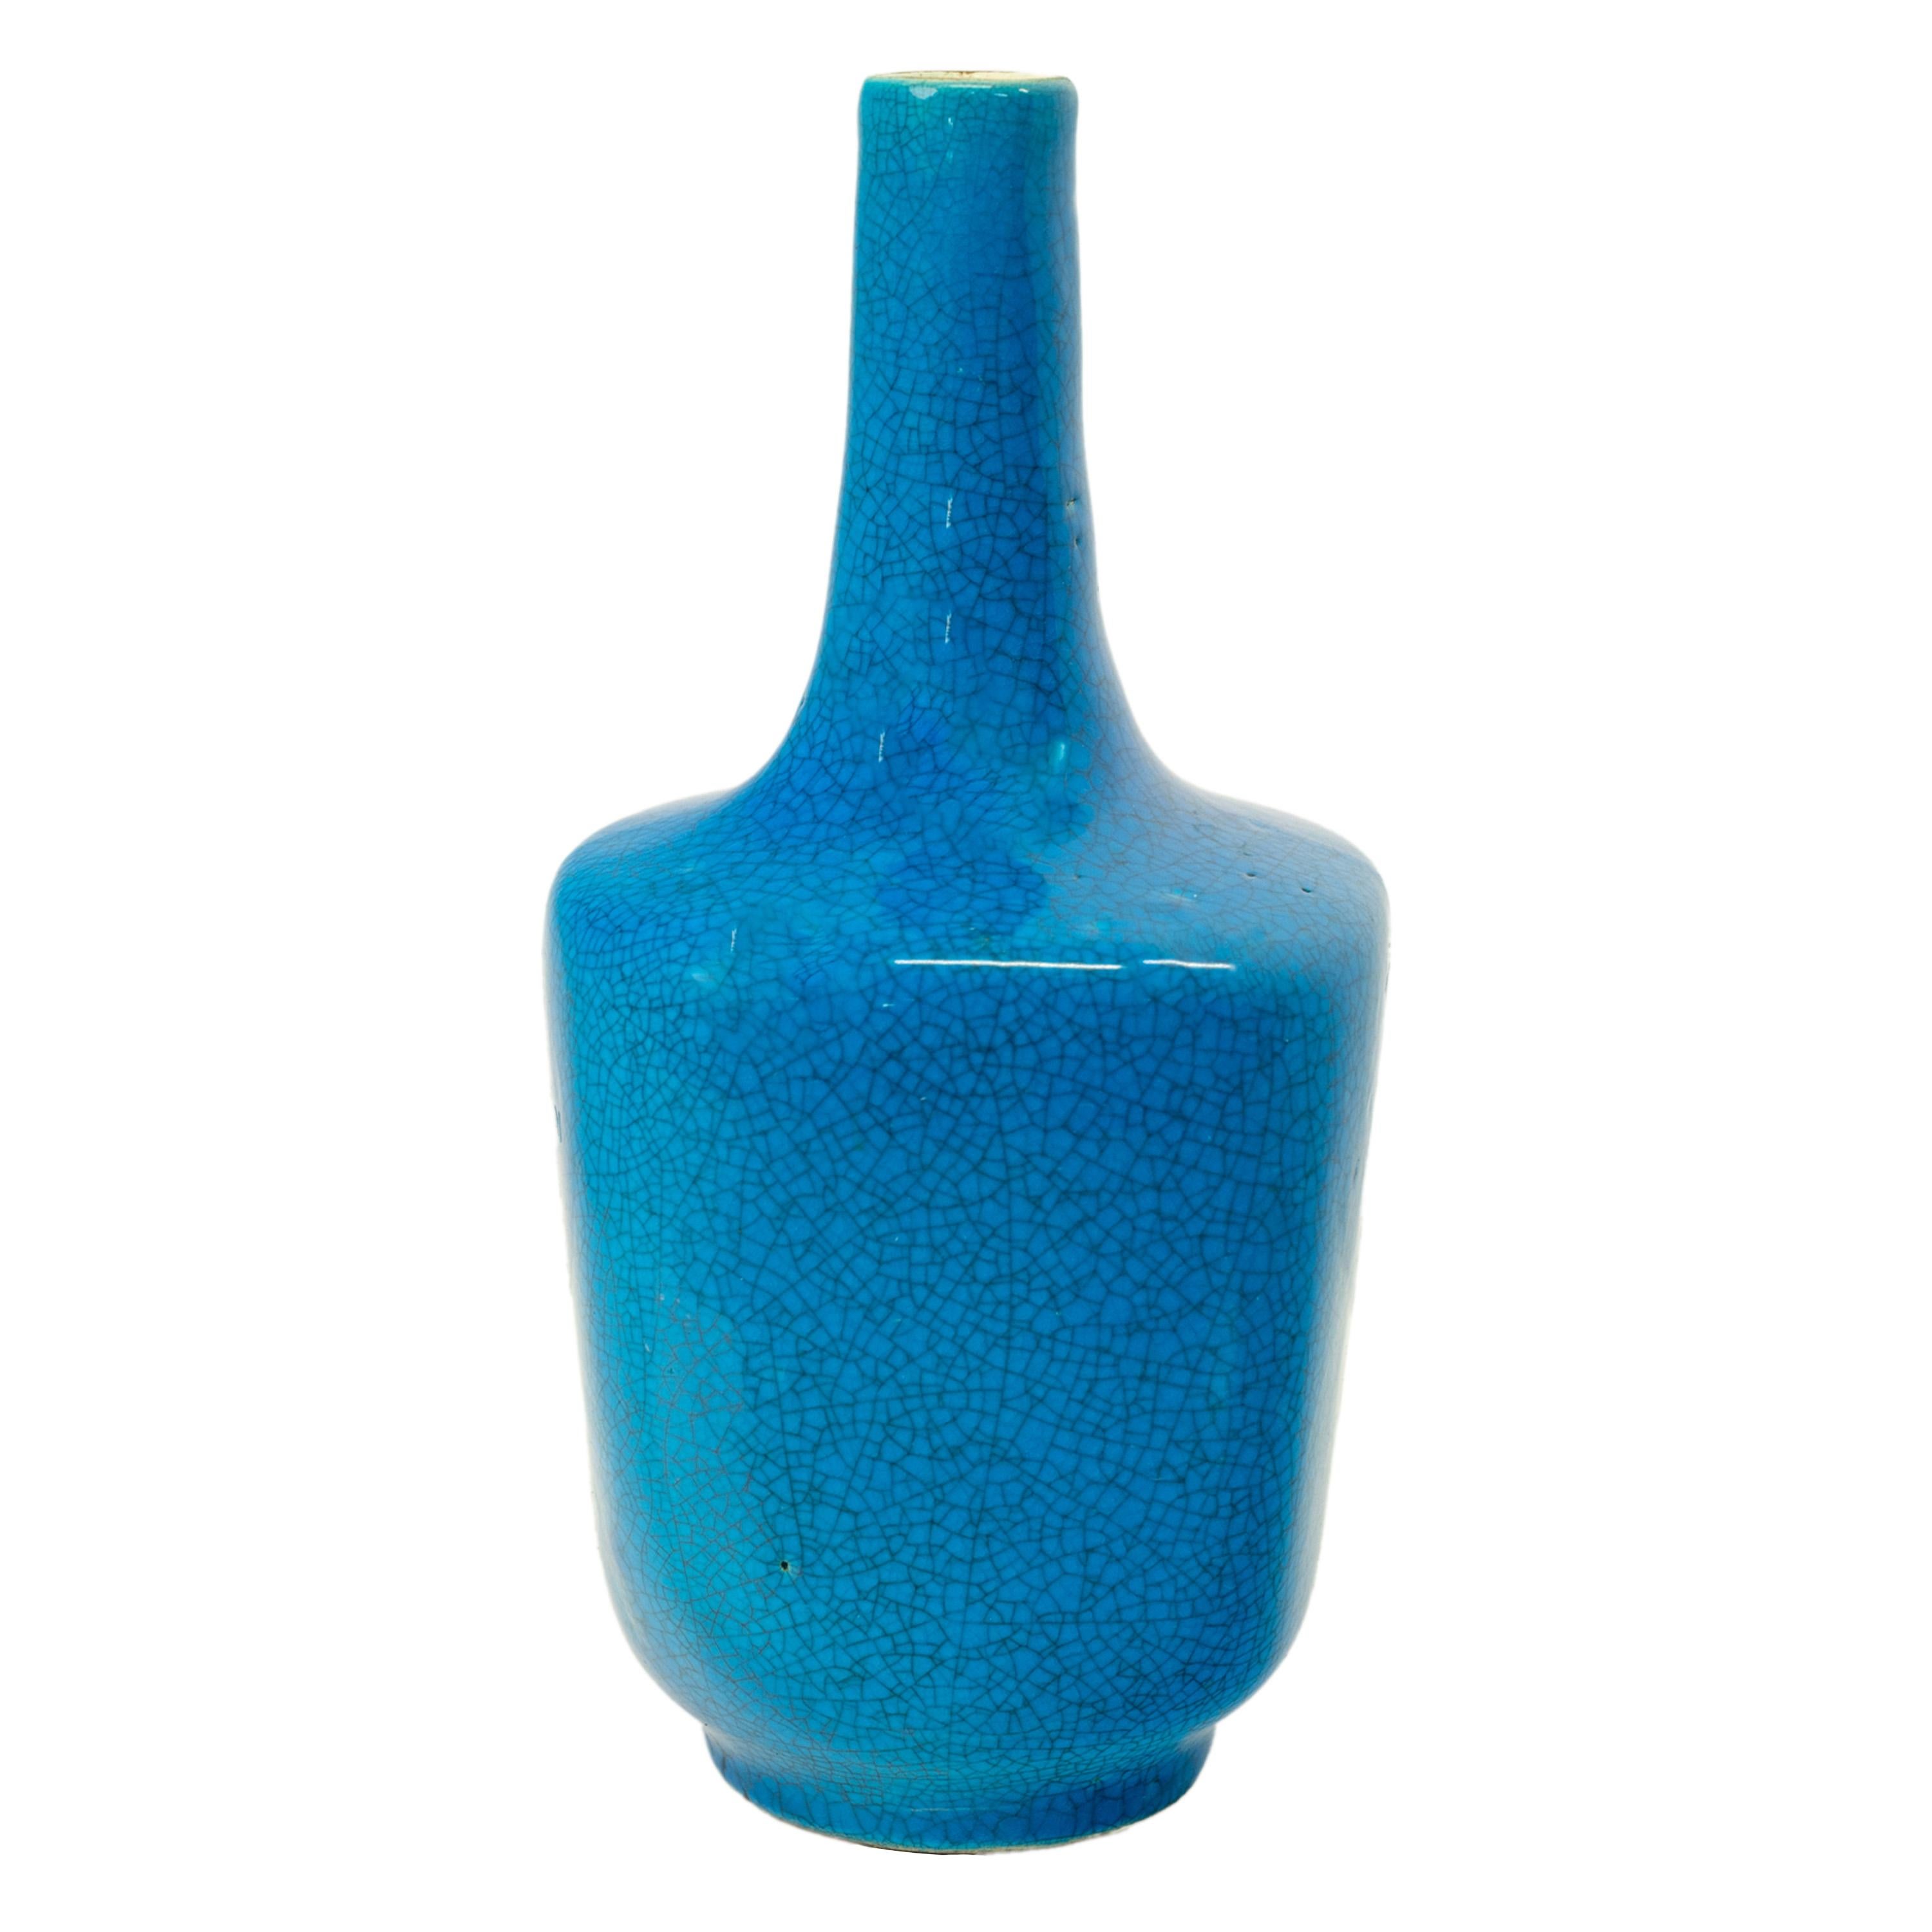 Un bon vase ancien en poterie bleue belge à glaçure craquelée, Charles Catteau pour Boch Frères, vers 1925.
Le vase en forme de bouteille avec une base en forme de maillet et reposant sur un pied circulaire peu profond, le vase avec une belle